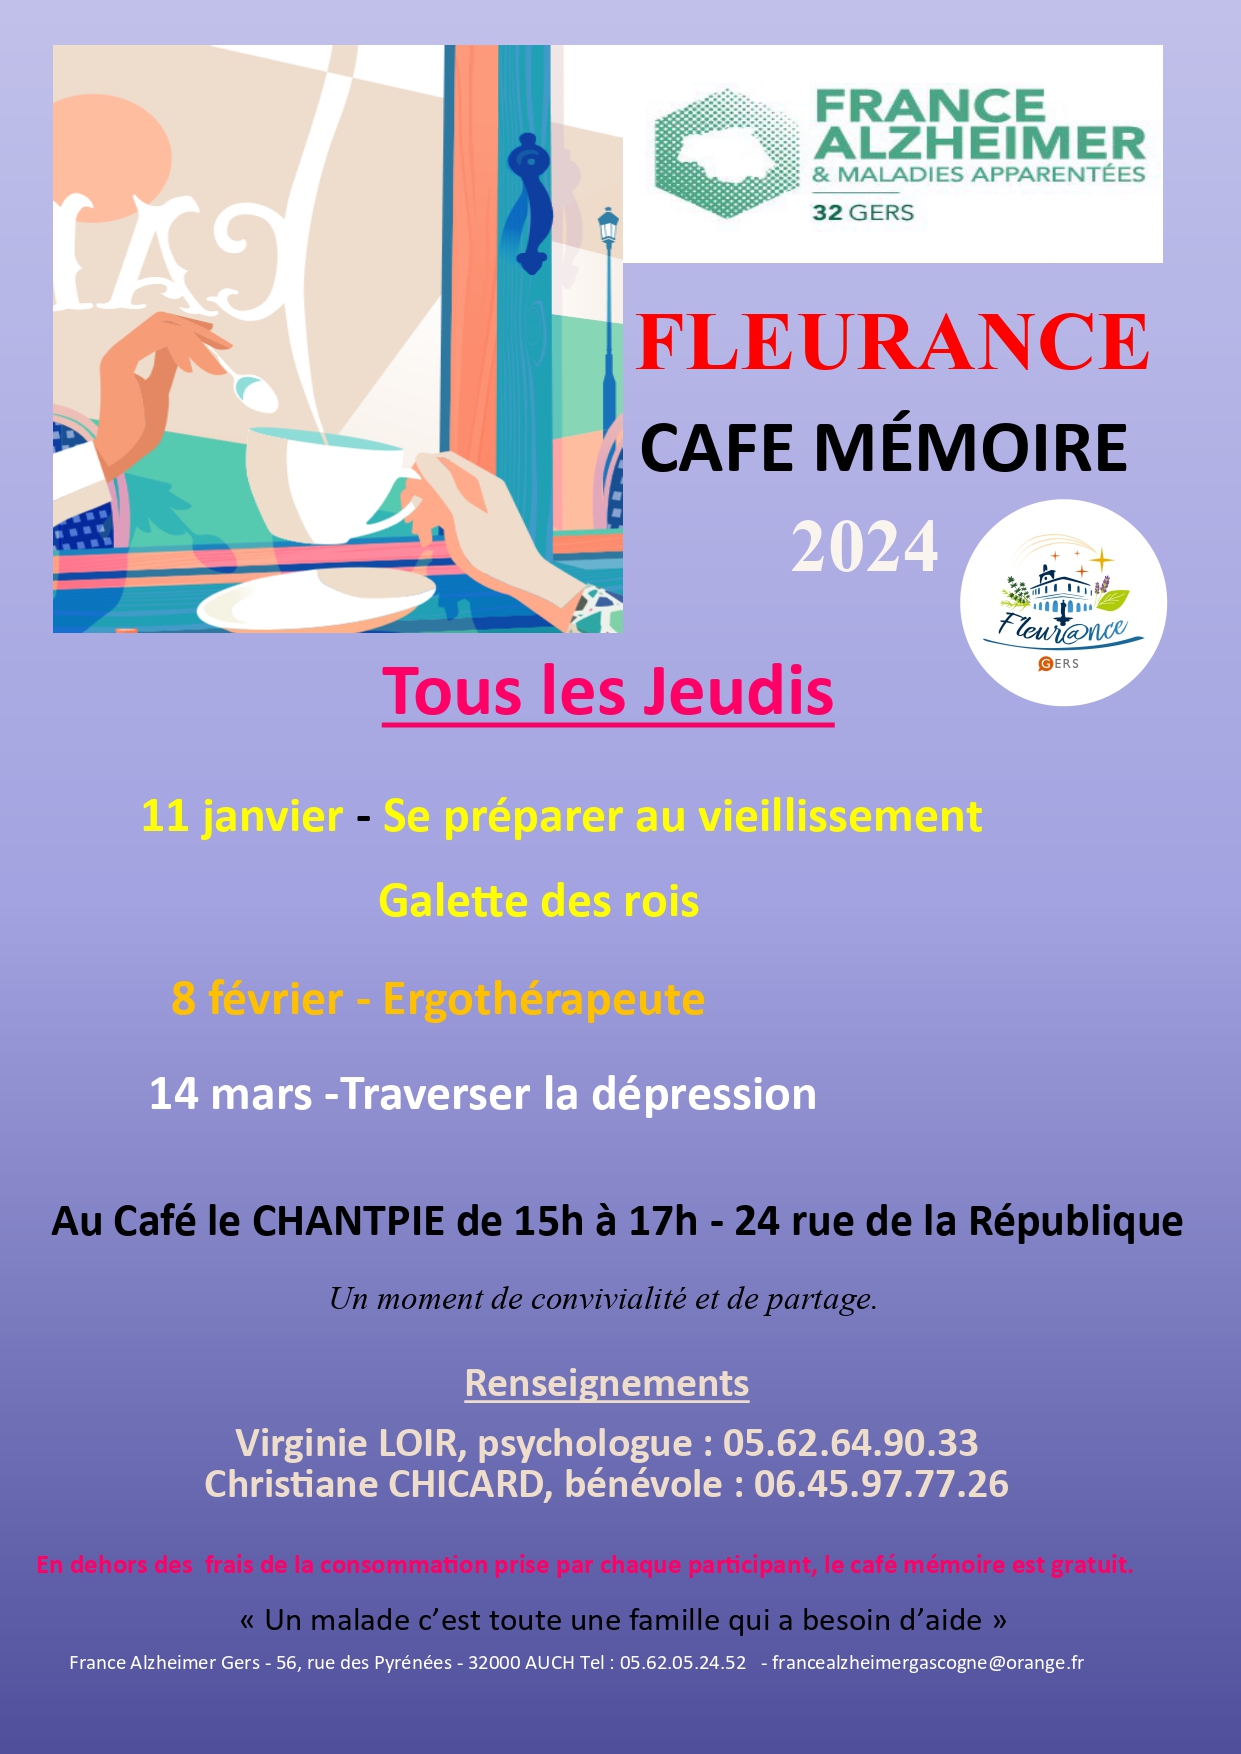 Café mémoire Fleurance